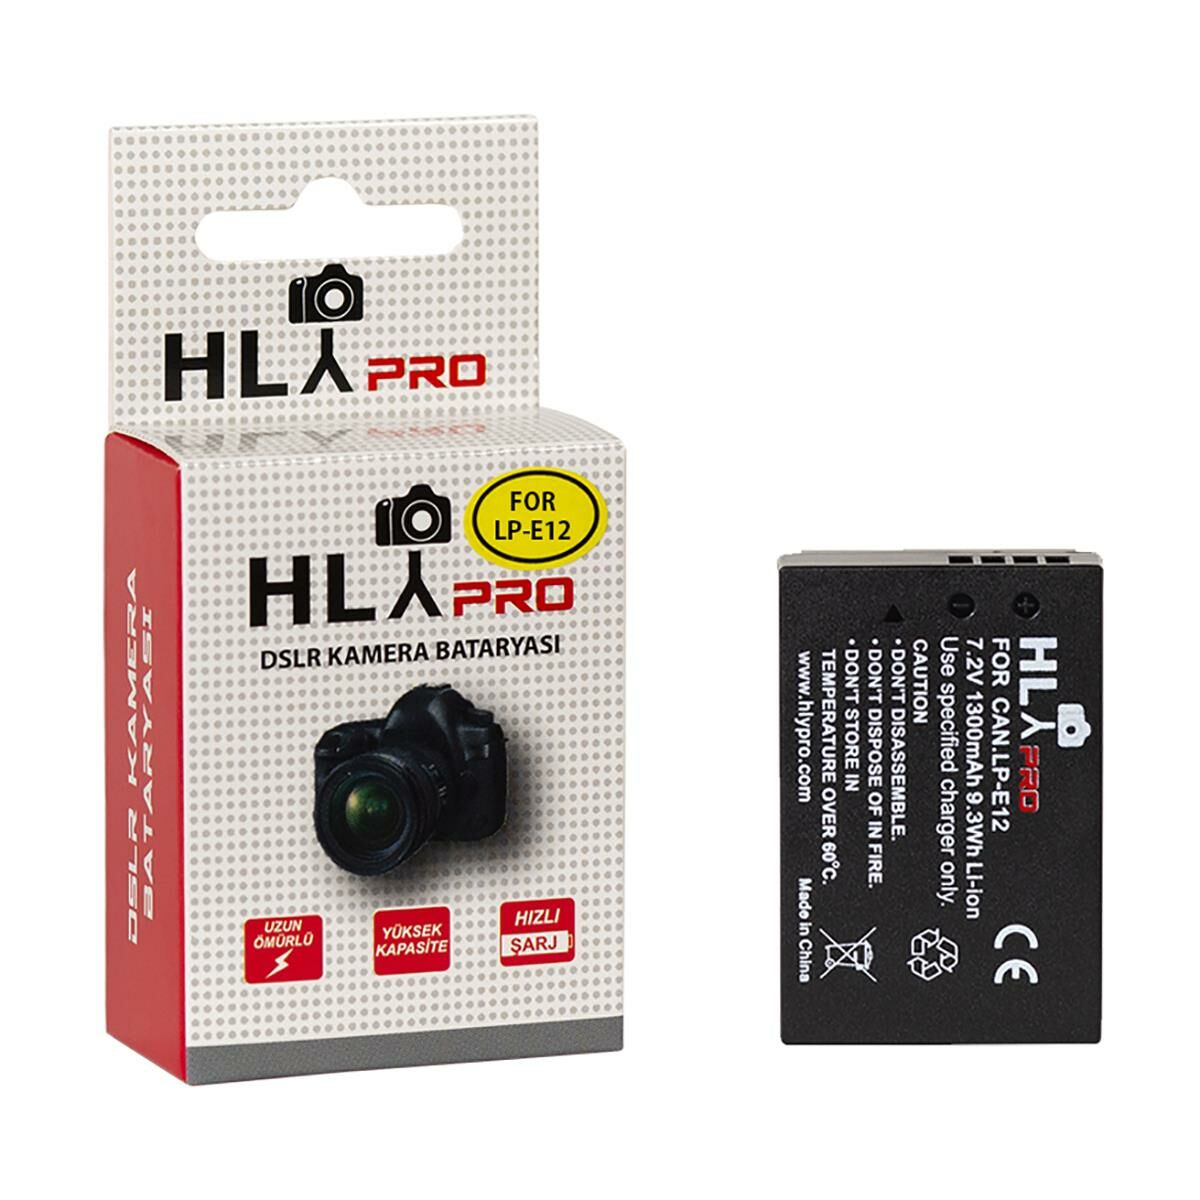 Hlypro Canon 100D için LP-12 Batarya